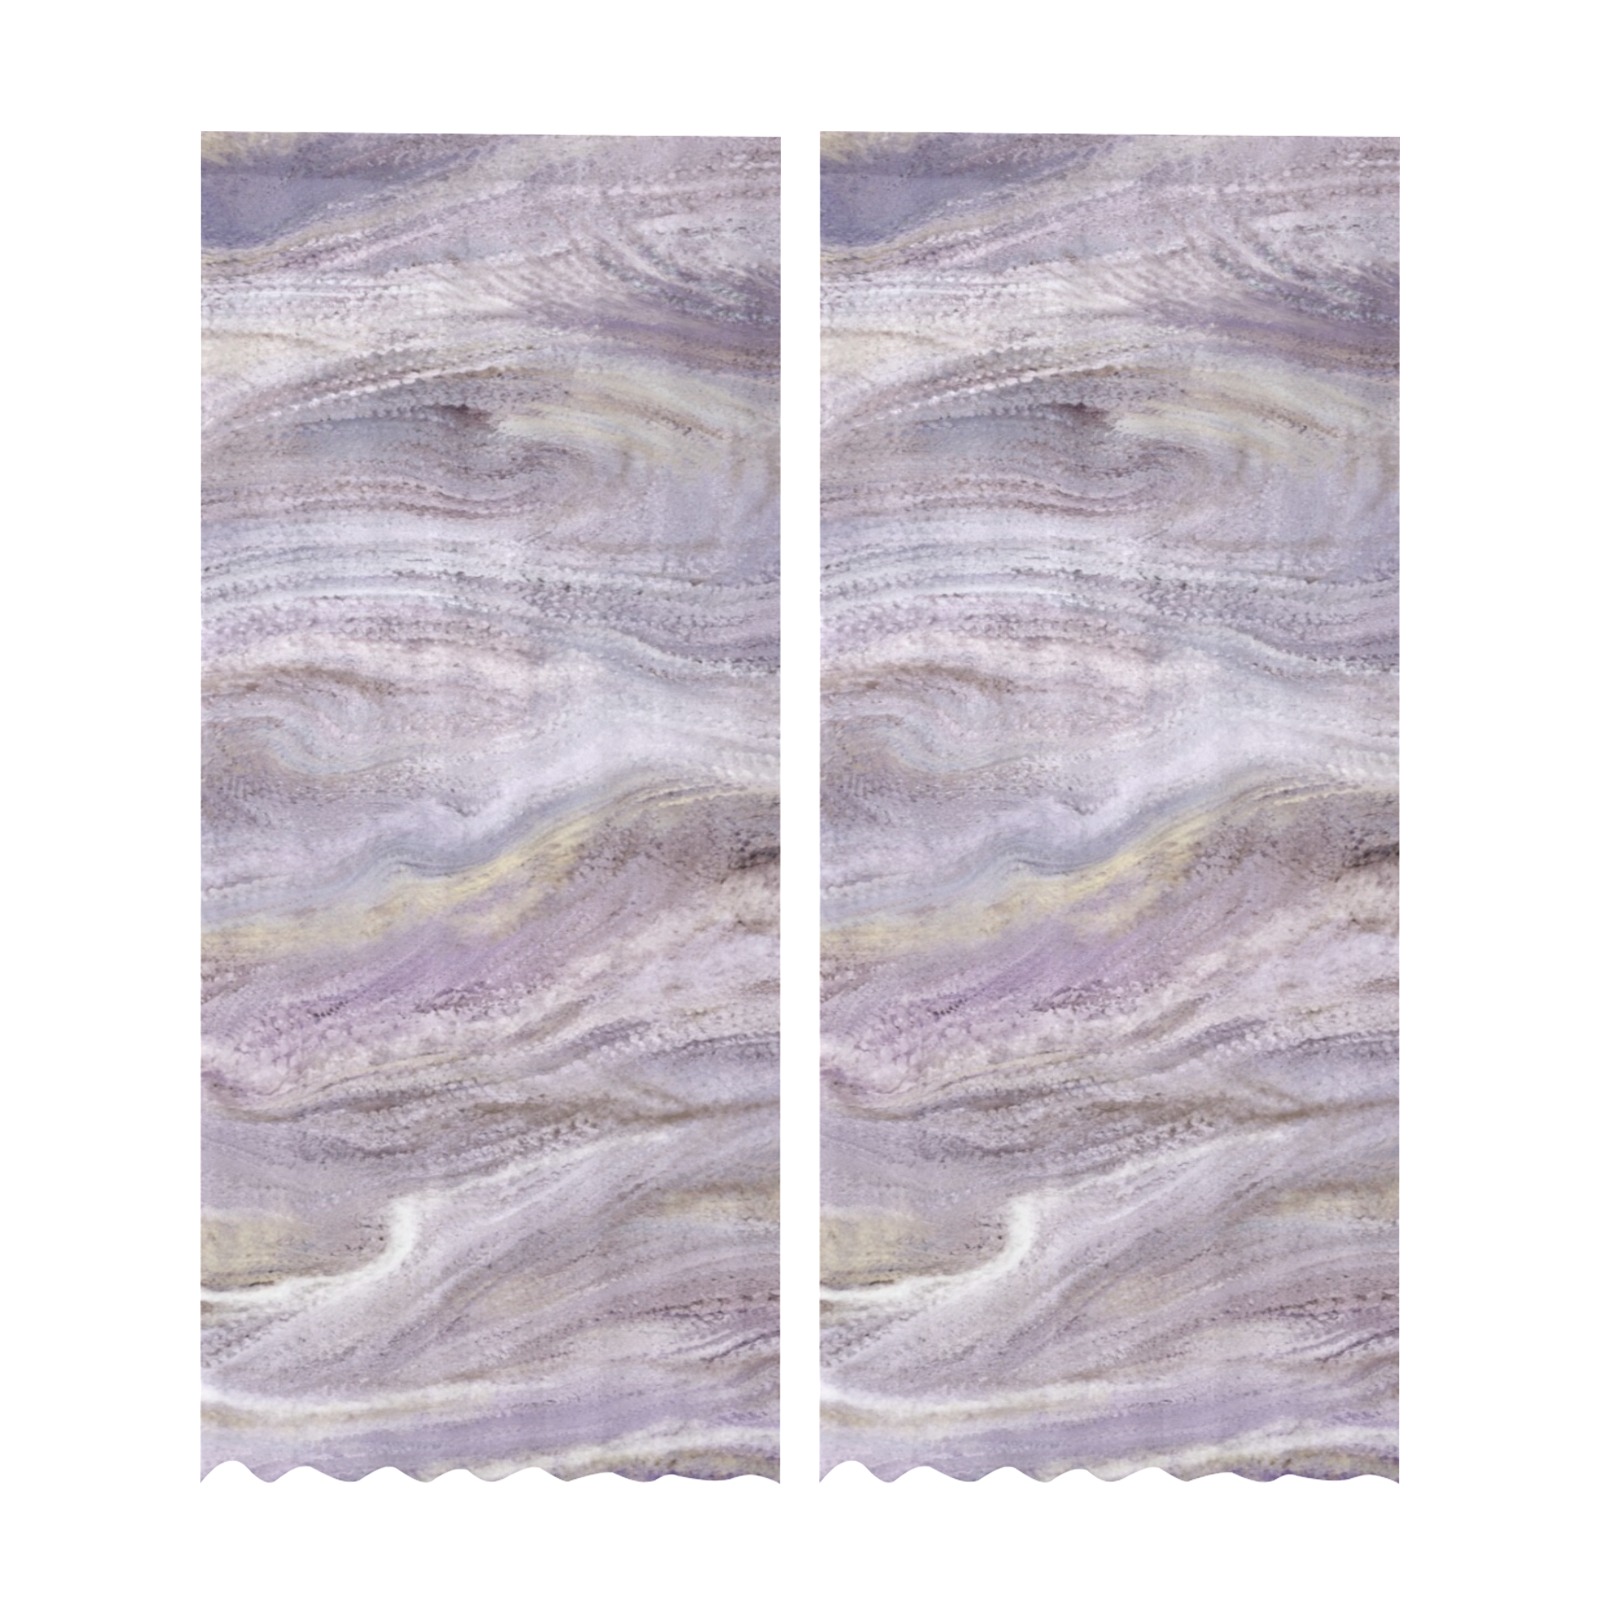 Mona 2-18 Gauze Curtain 28"x95" (Two-Piece)